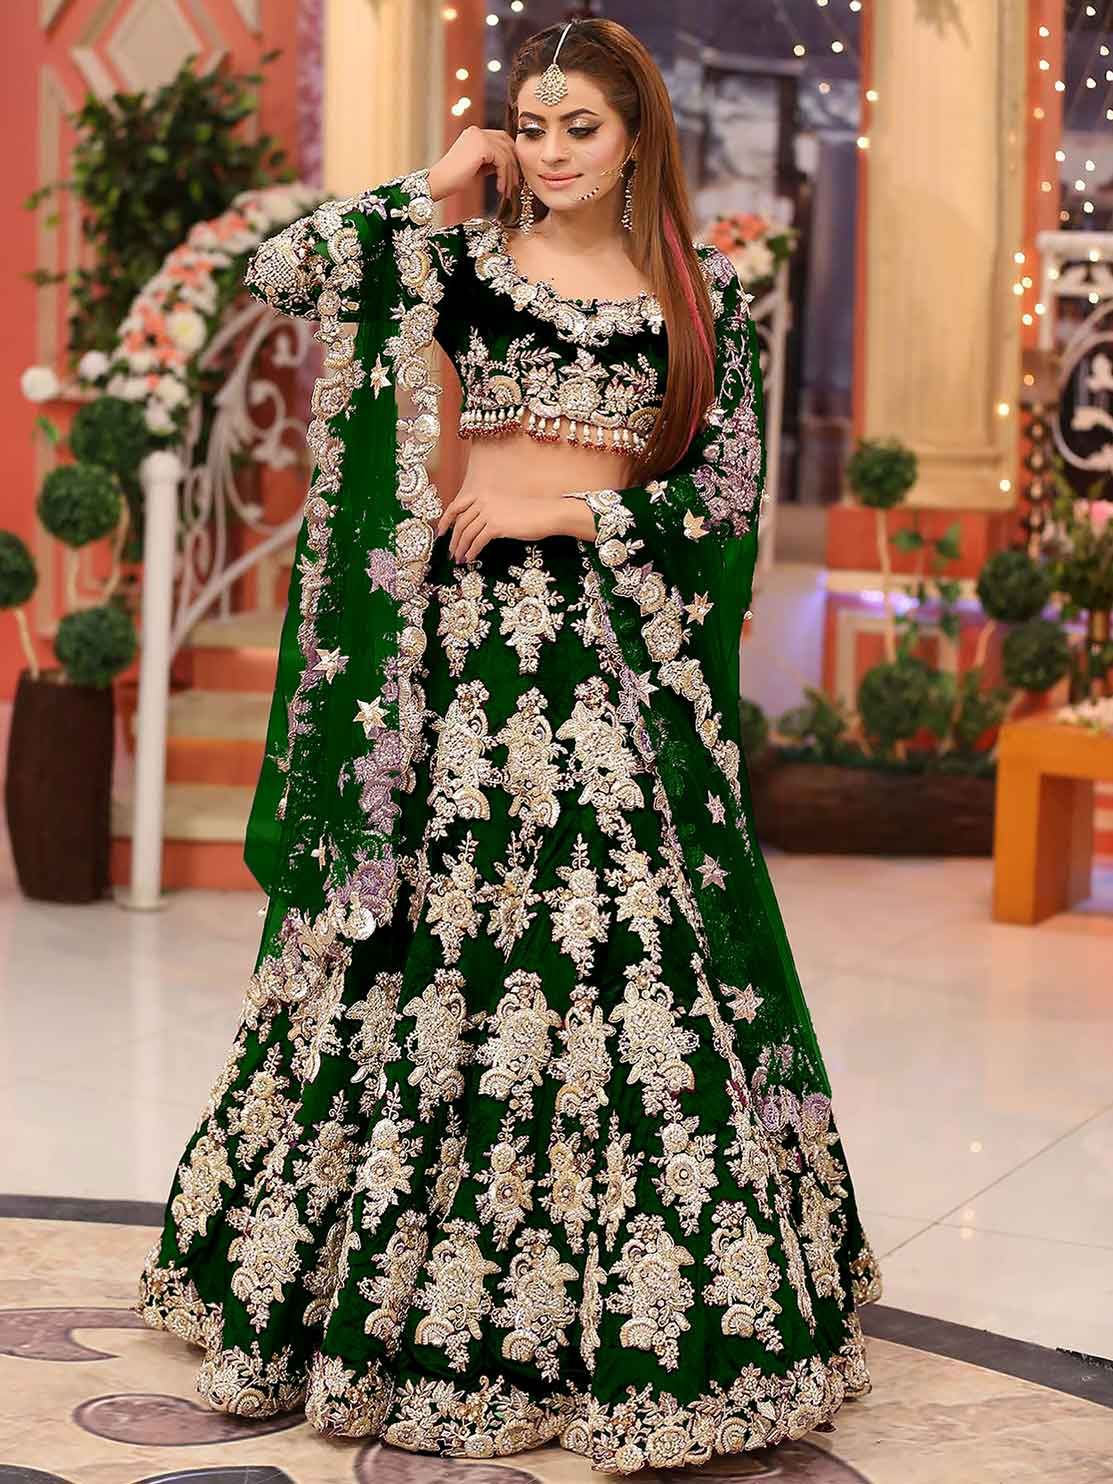 Lehenga choli Latest New Indian Wedding Bollywood Design Green Lehenga Choli  | eBay